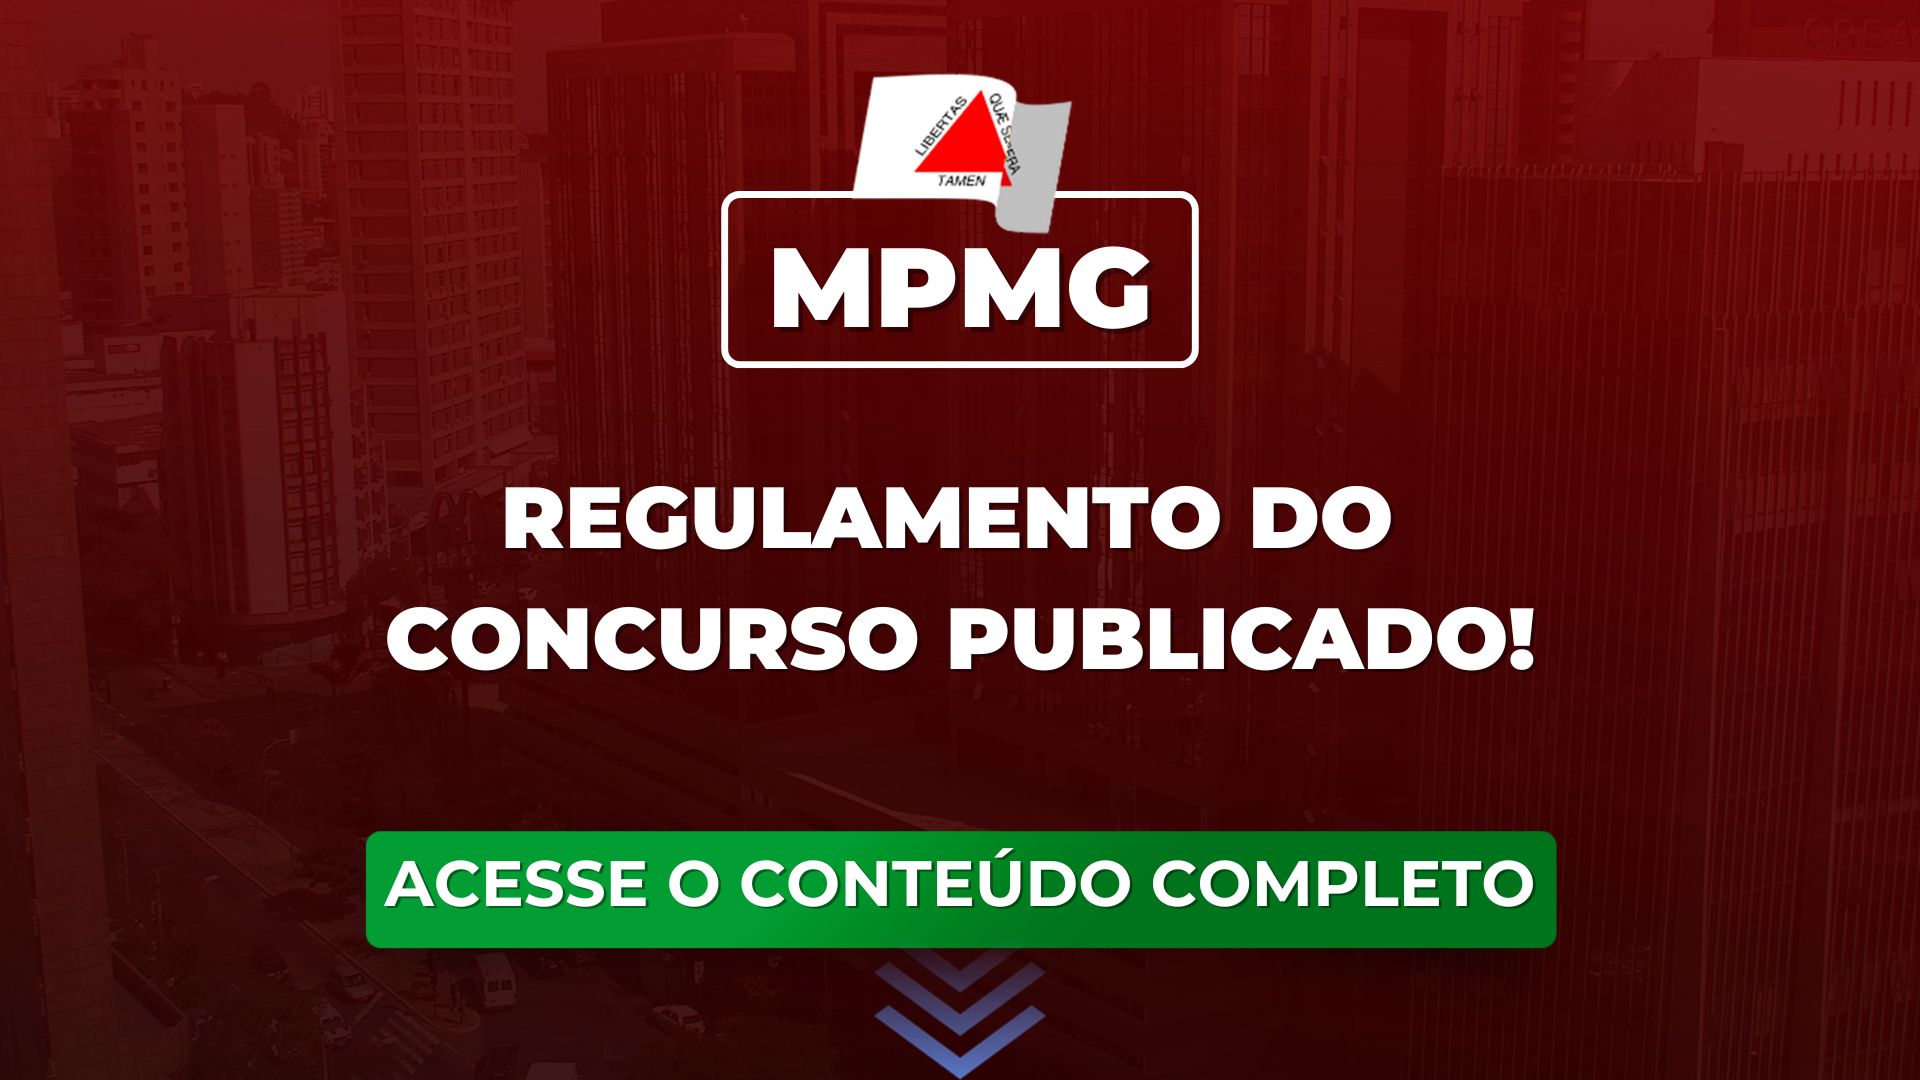 MPMG: novo regulamento do concurso publicado!